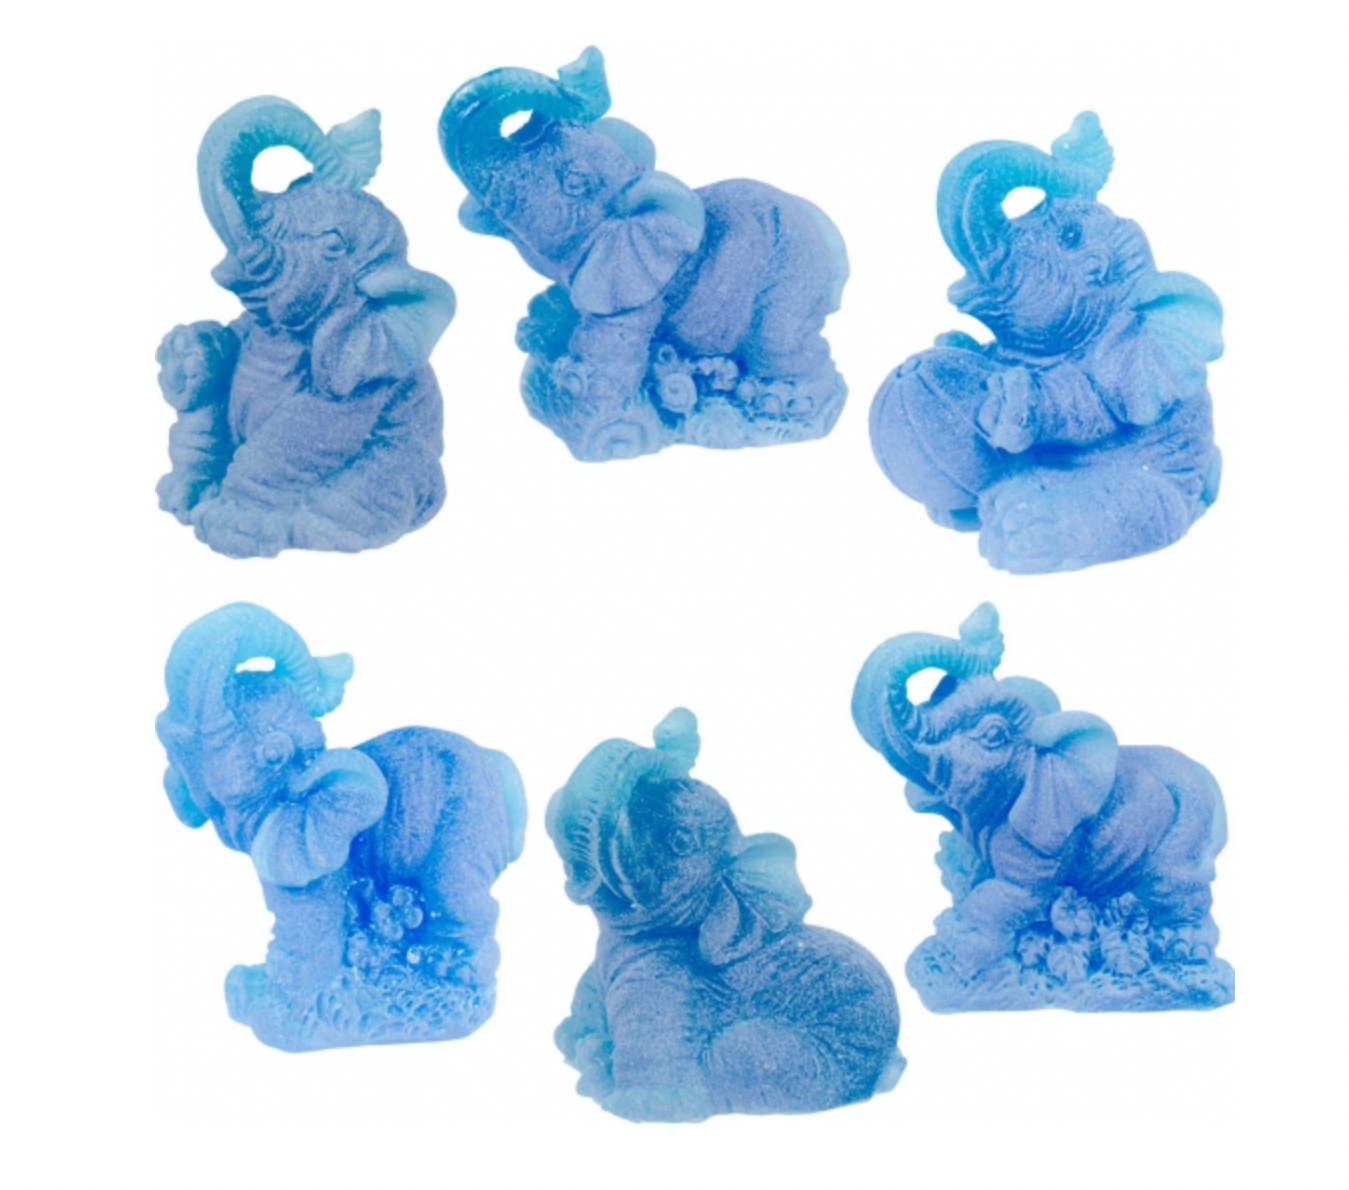 Elephant Figurine - Blue 2"